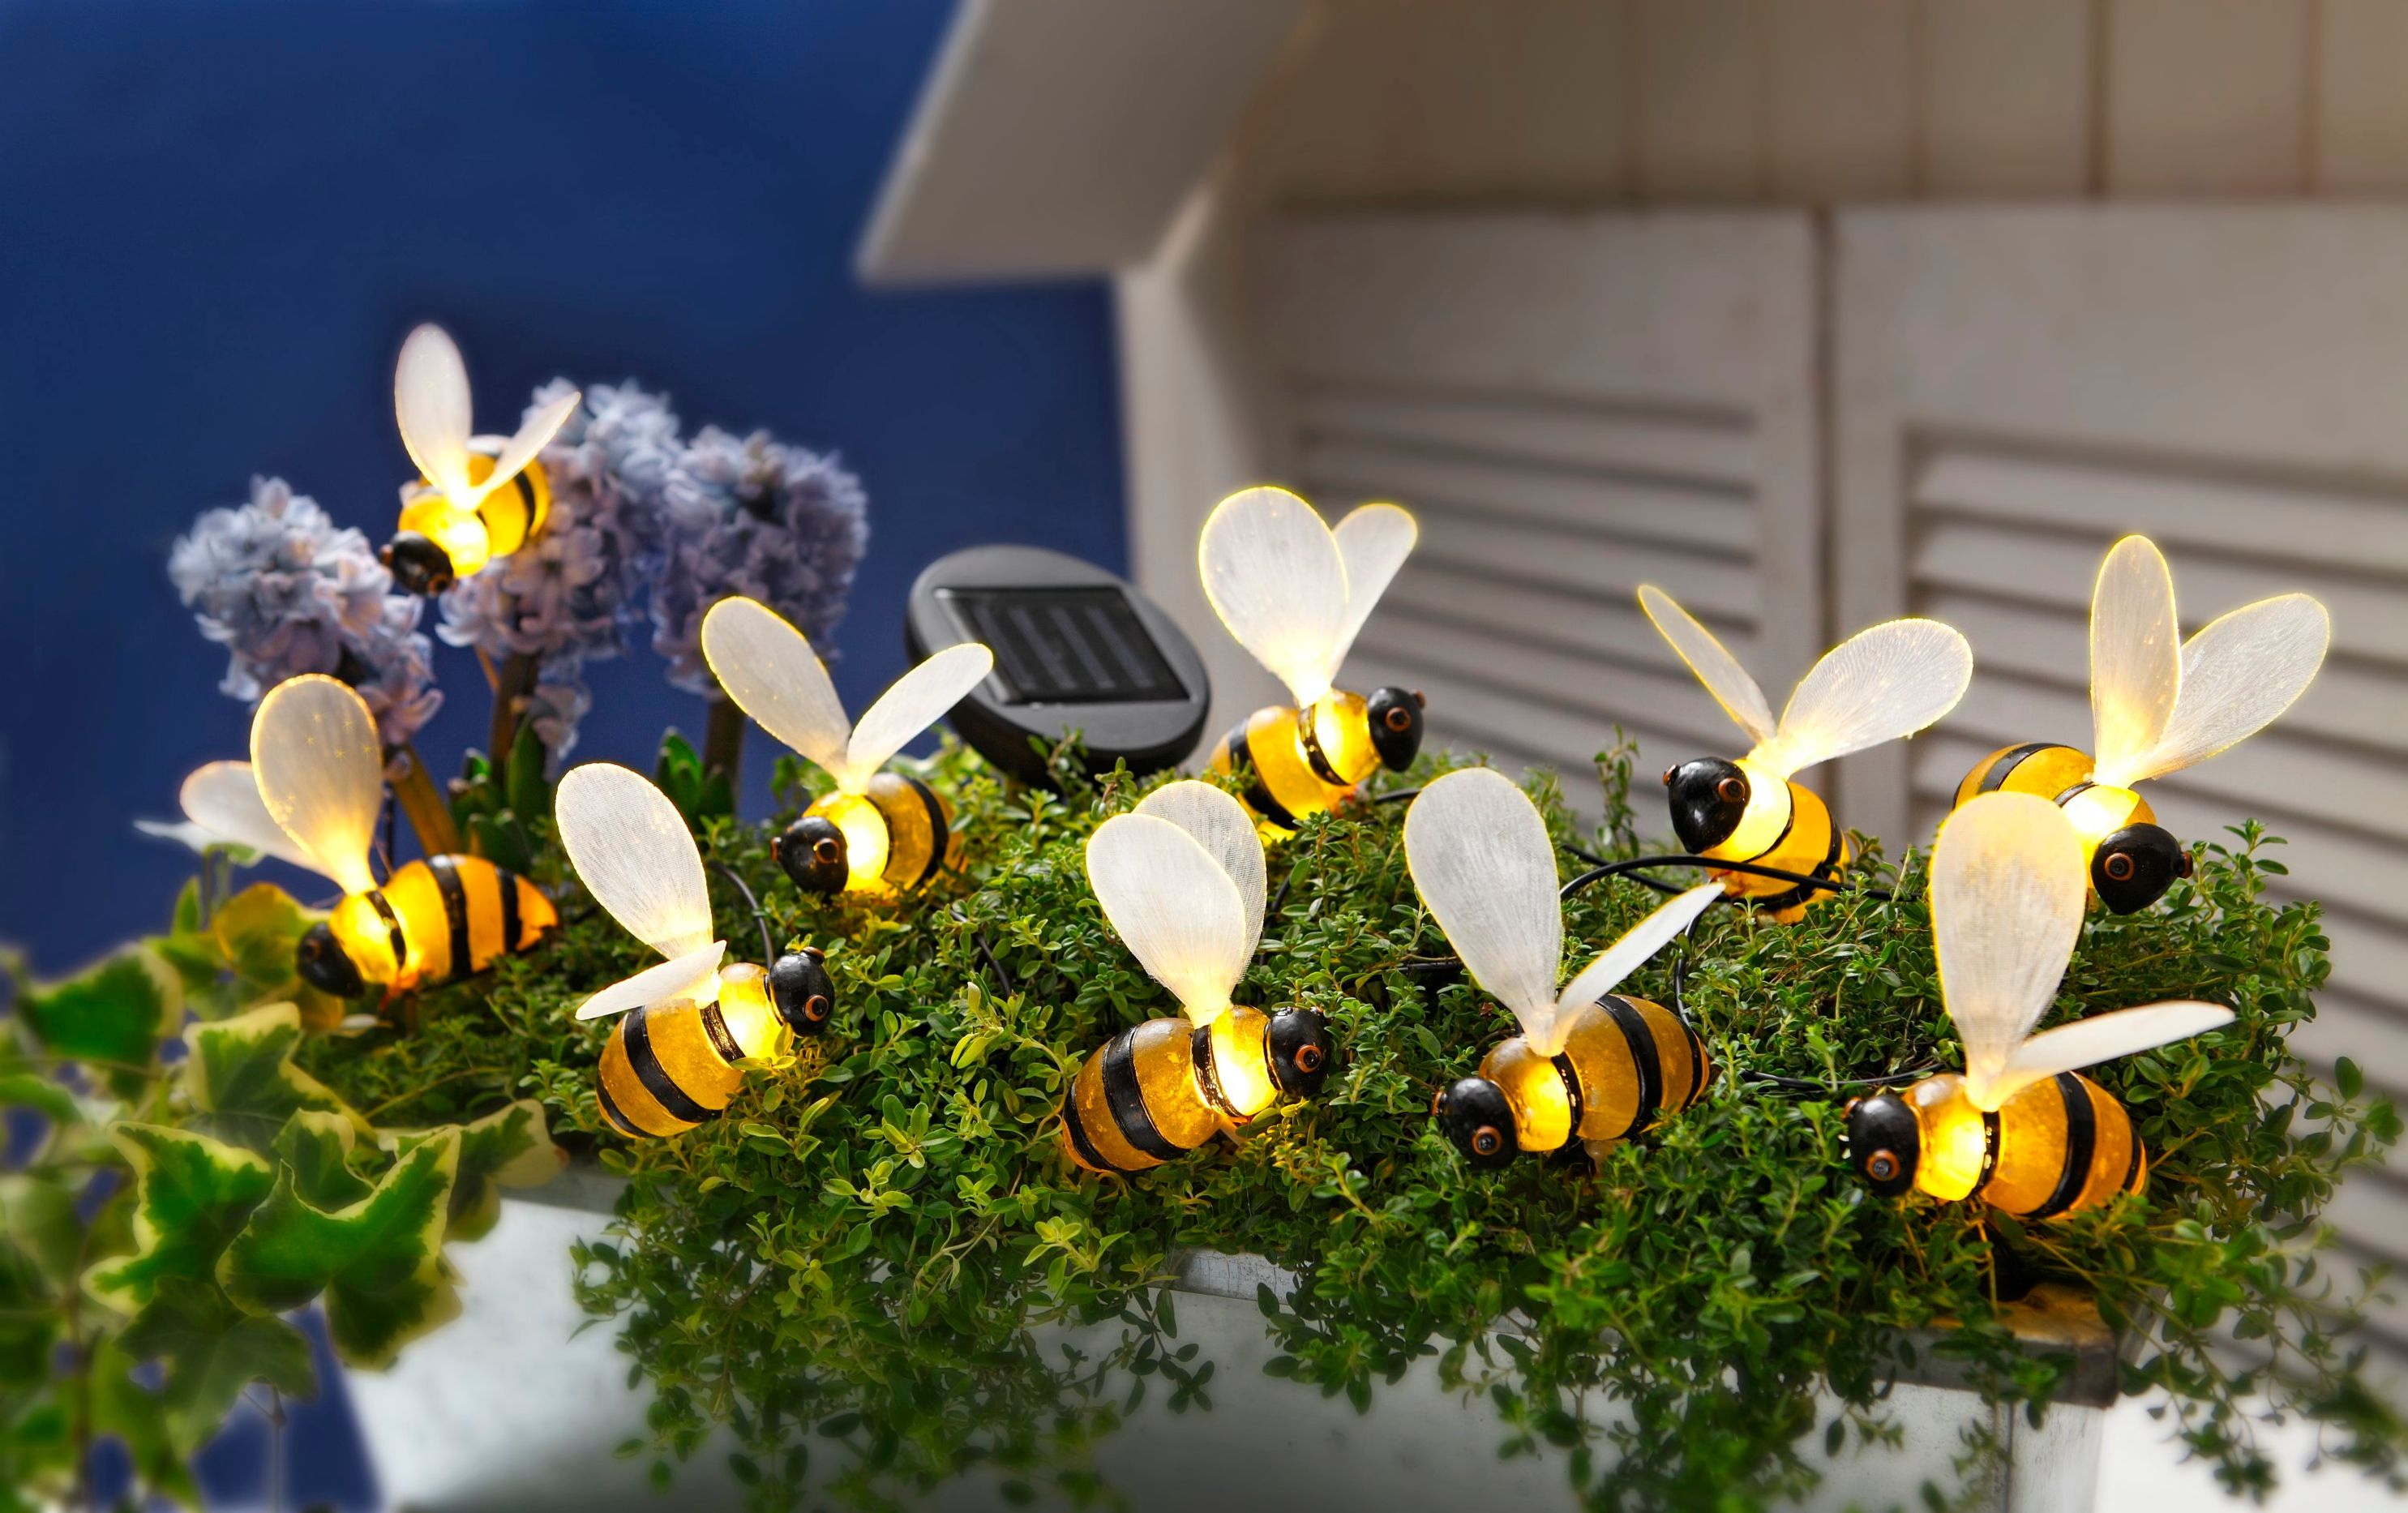 Solar-Lichterkette Bienchen jetzt bei Weltbild.at bestellen